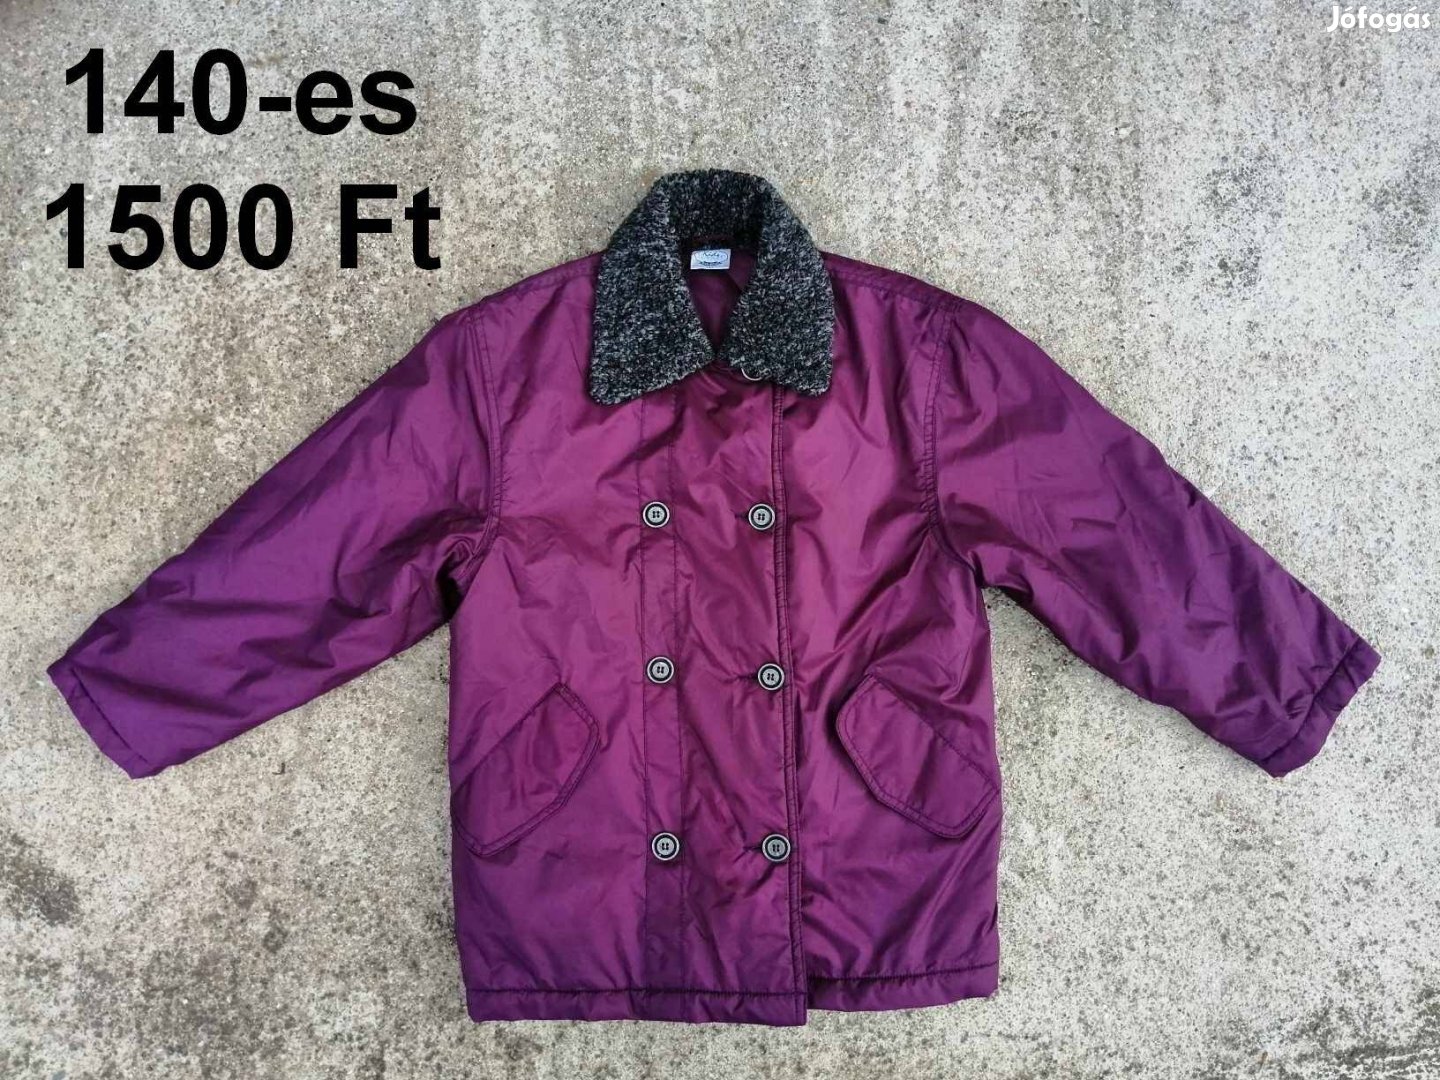 140-es lányos, lila átmeneti kabát eladó!